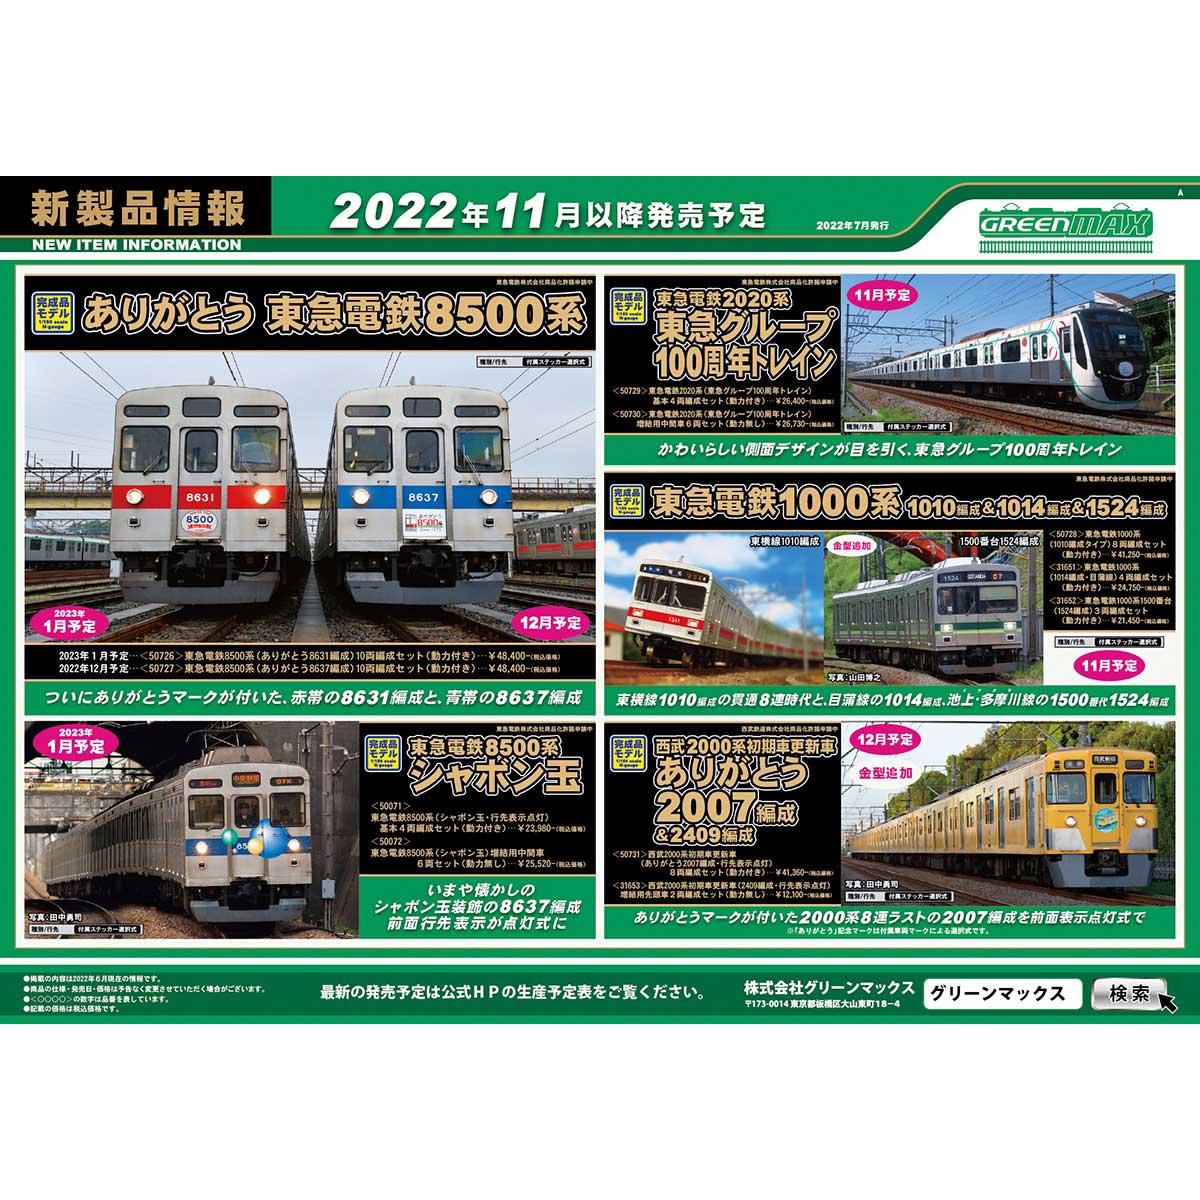 2022年7月14日発行A｜新製品情報ポスター｜Nゲージ鉄道模型のグリーン